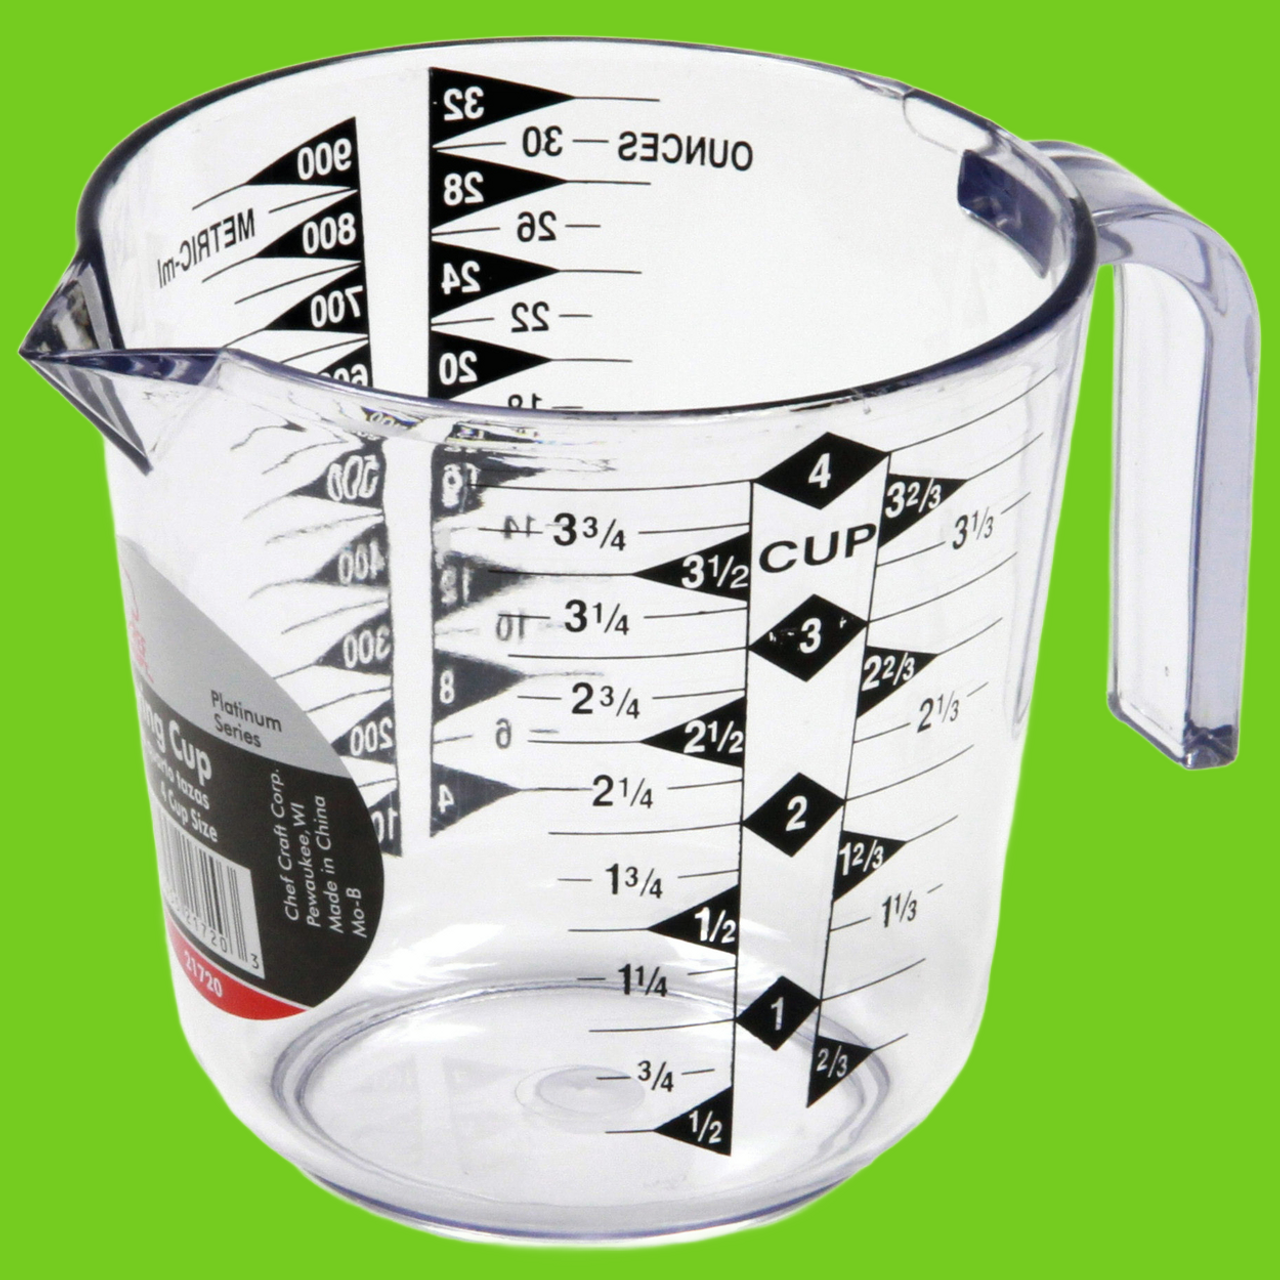 image: 4 cup measurer, green background